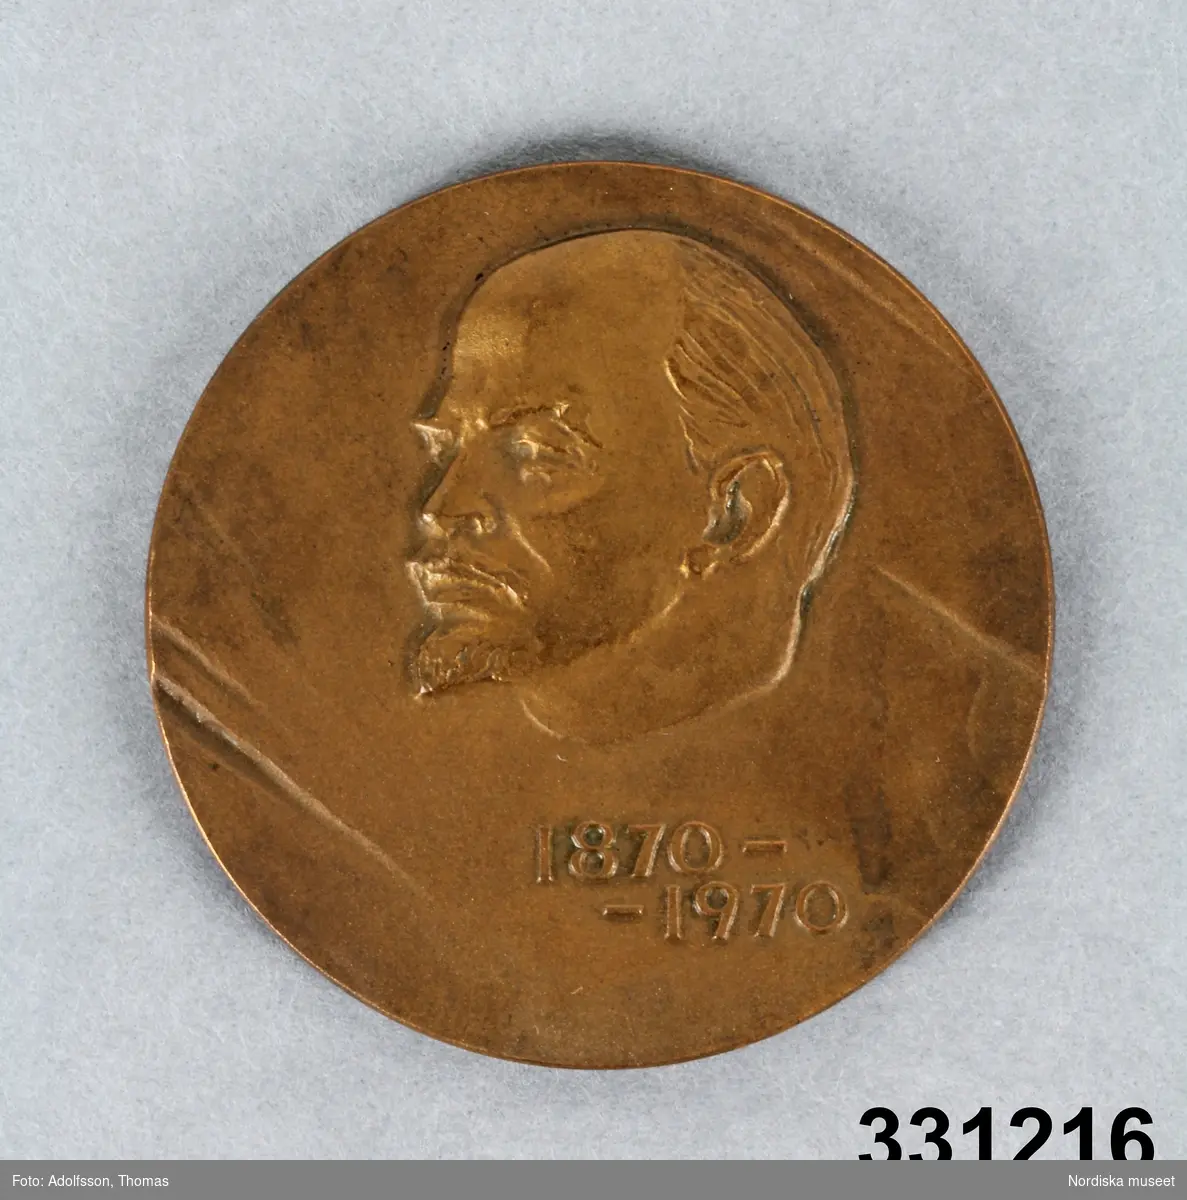 Medalj, rund. På åtsidan bild i relief föreställande Lenin och på årtalen "1870-1970". På frånsidan text på ryska och eliptisk figur.
/Leif Walllin 2011-02-03